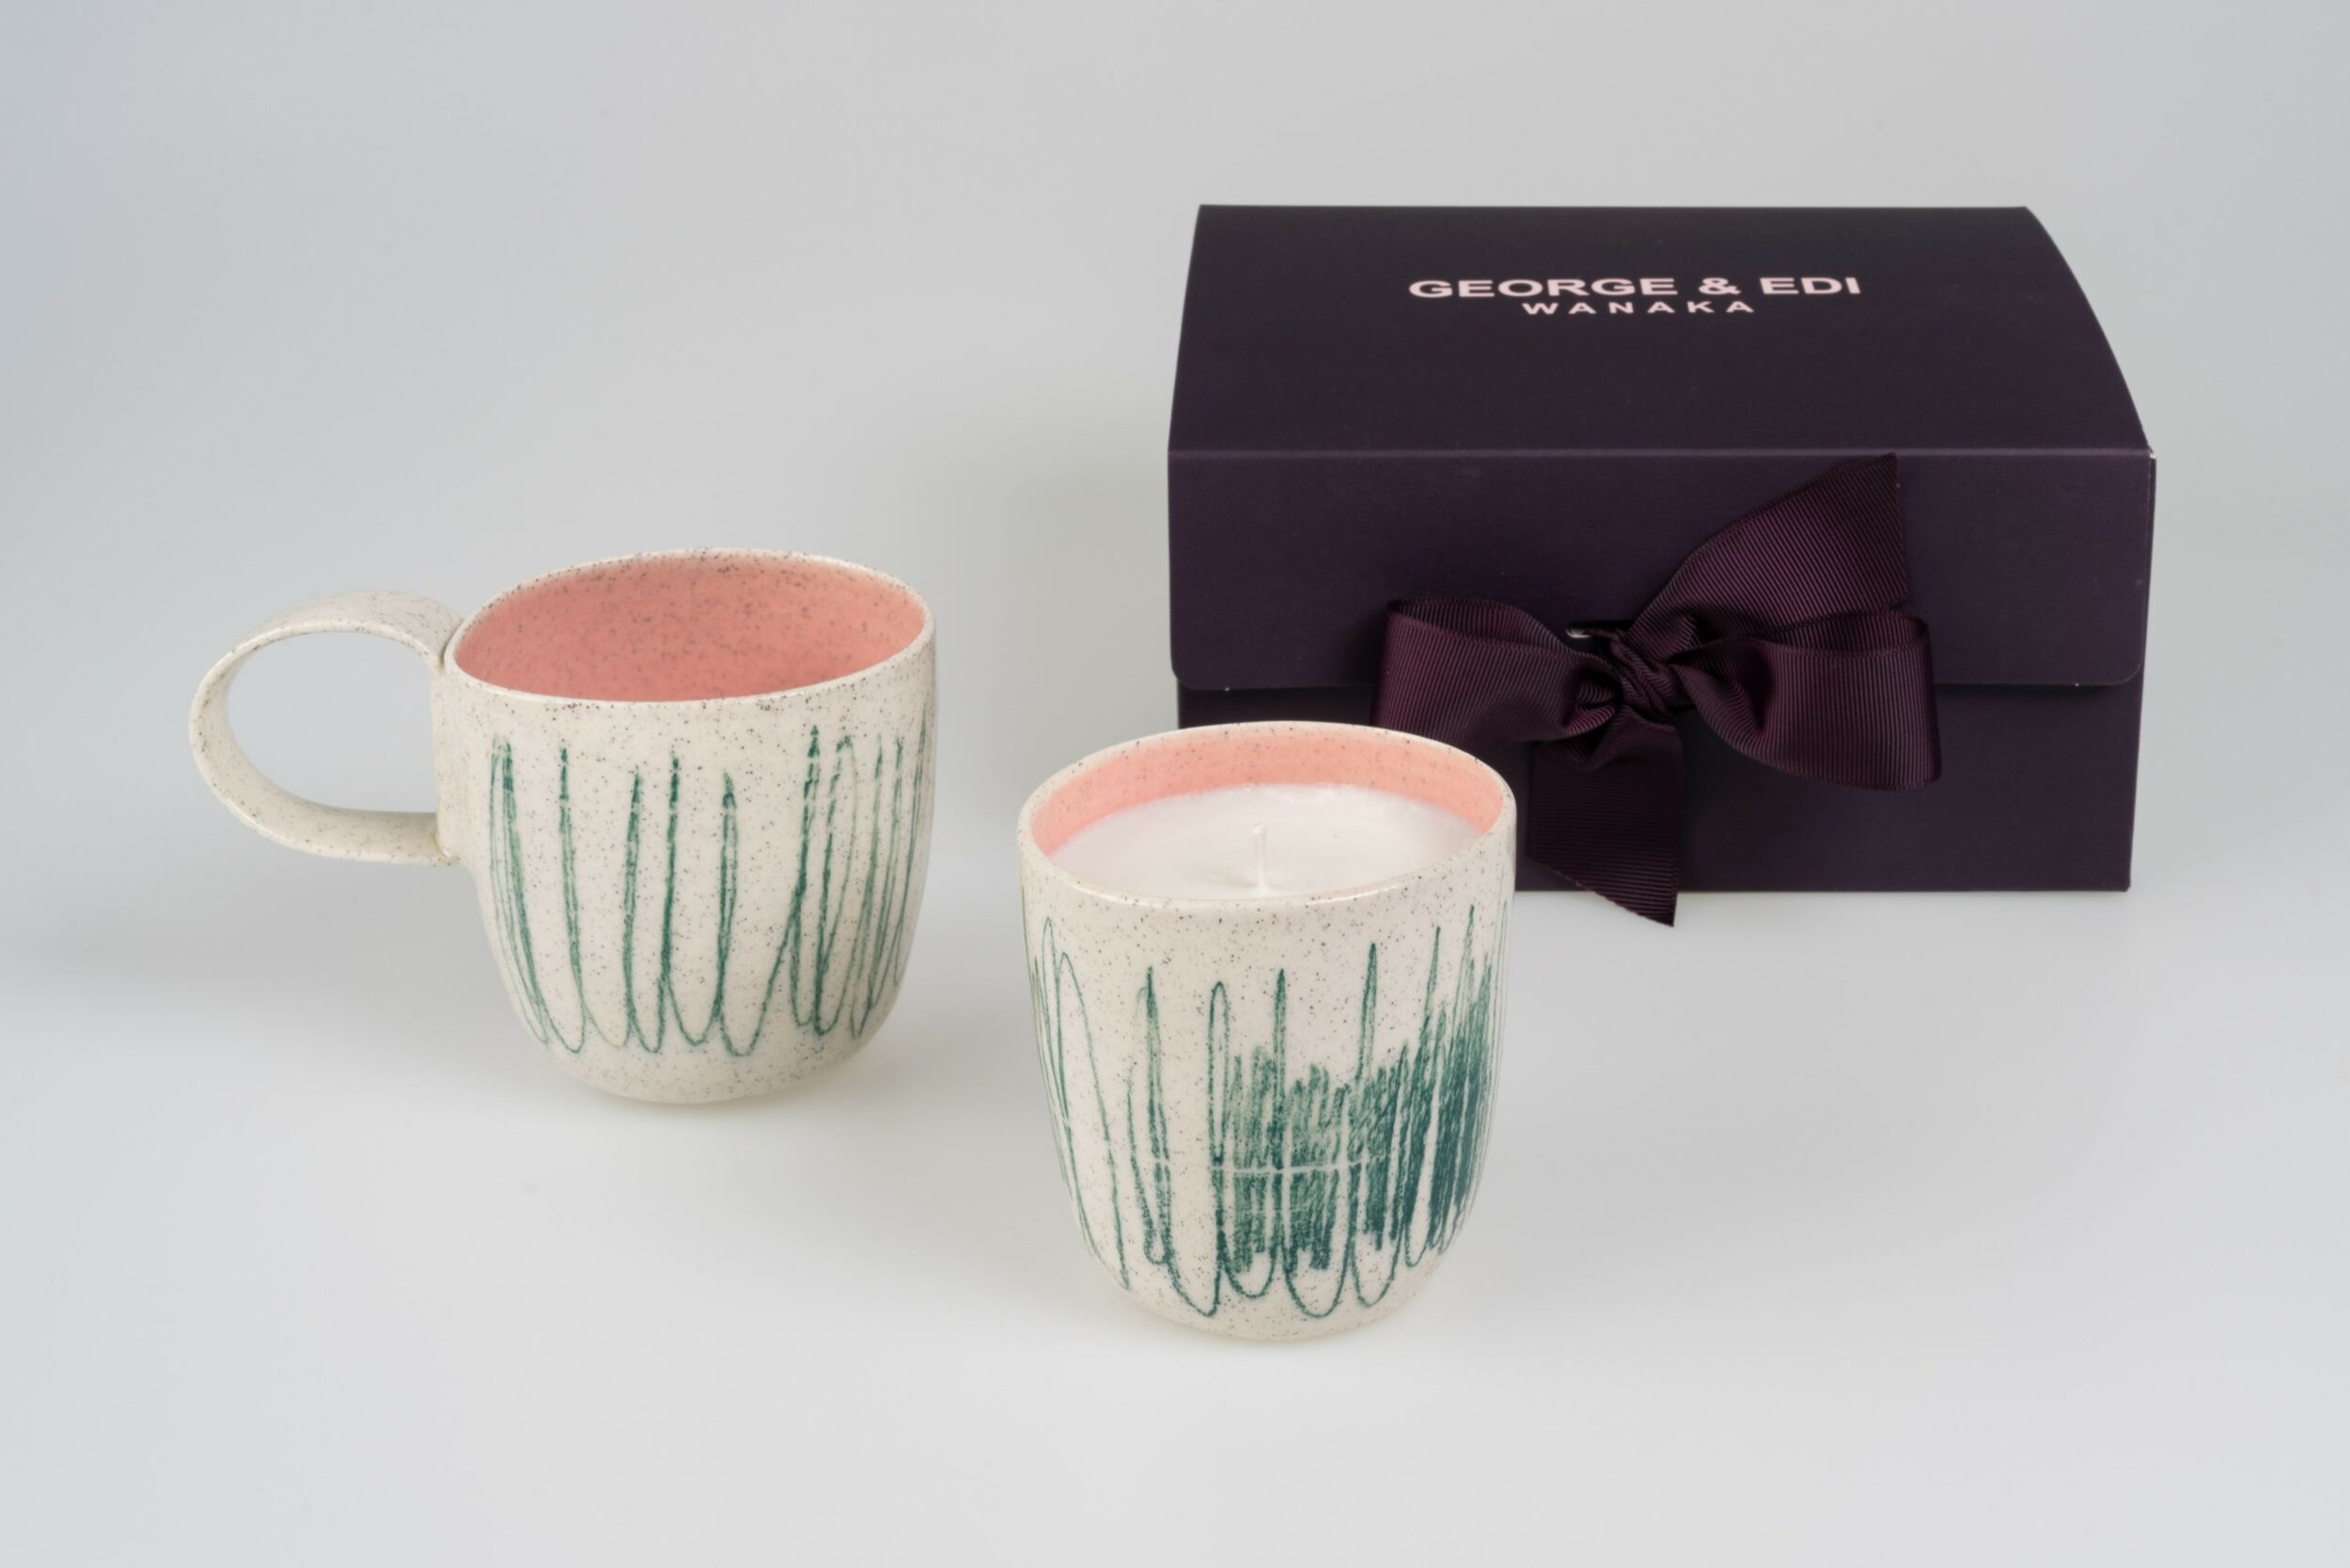 G E Artisanal Range Gift Box Candle And Mug